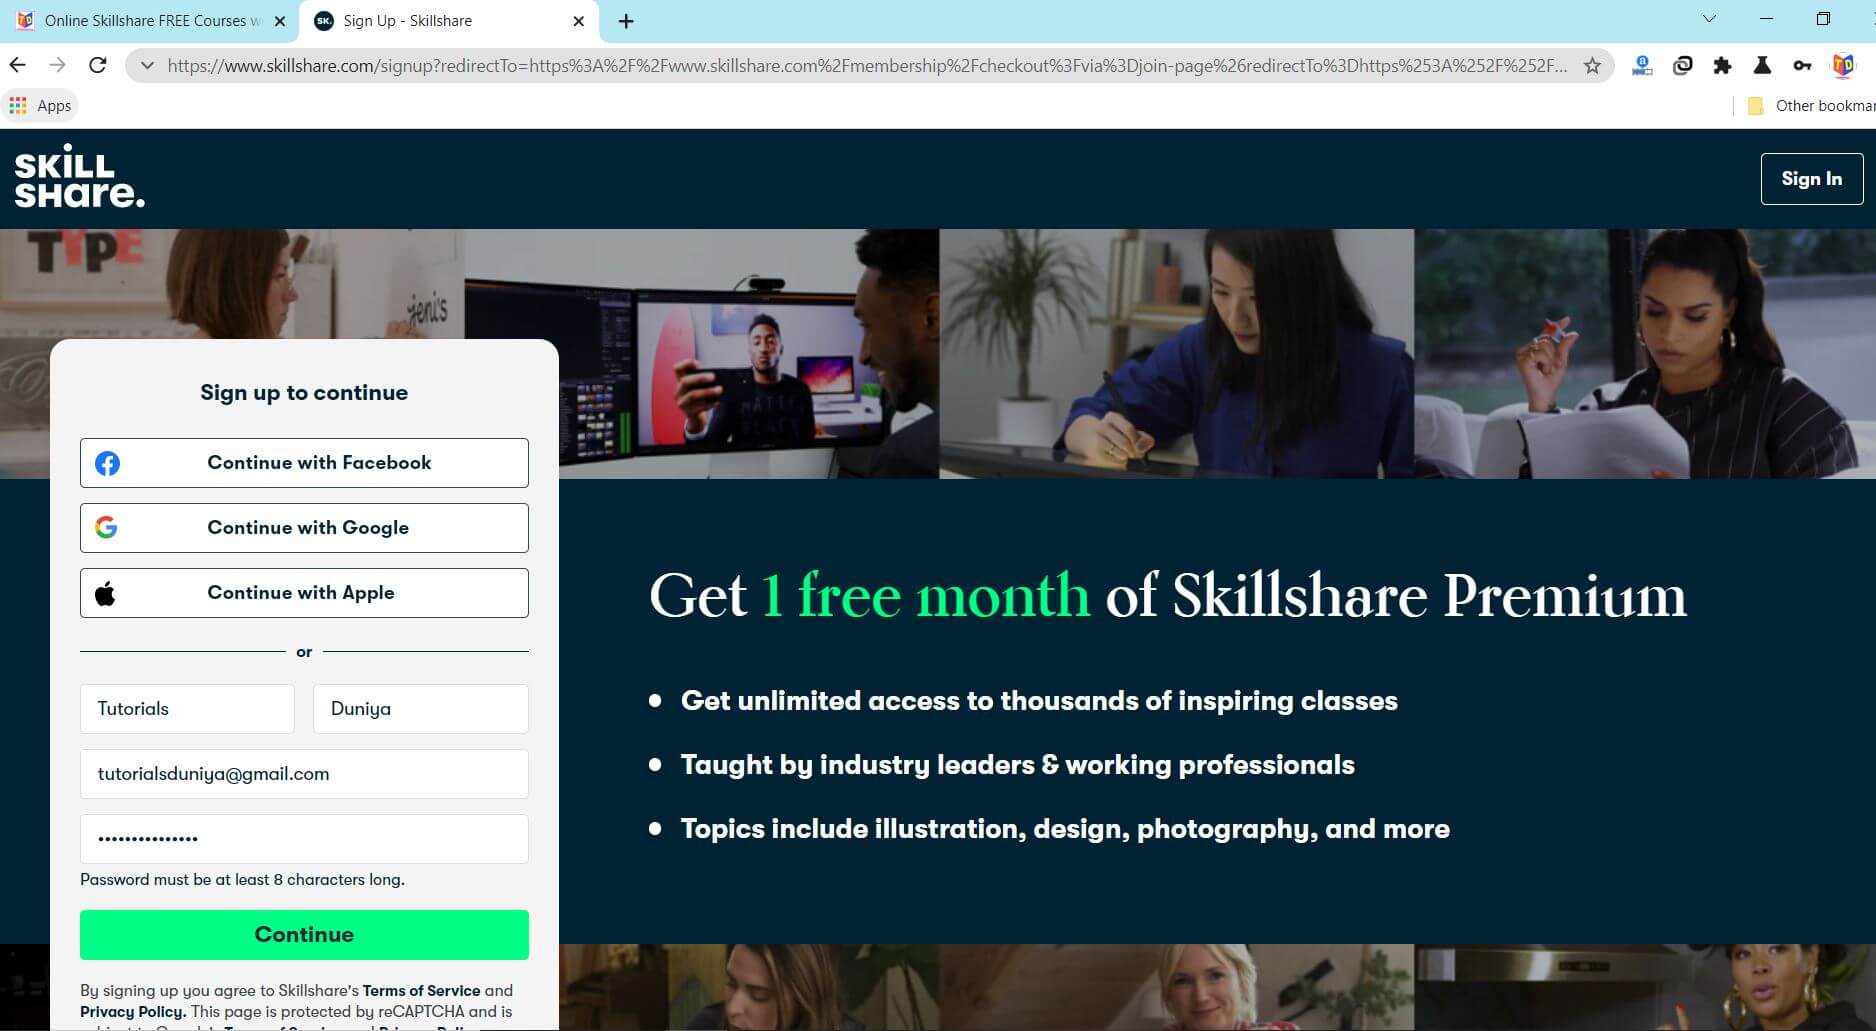 join skillshare to get 1 month free trial skillshare premium membership